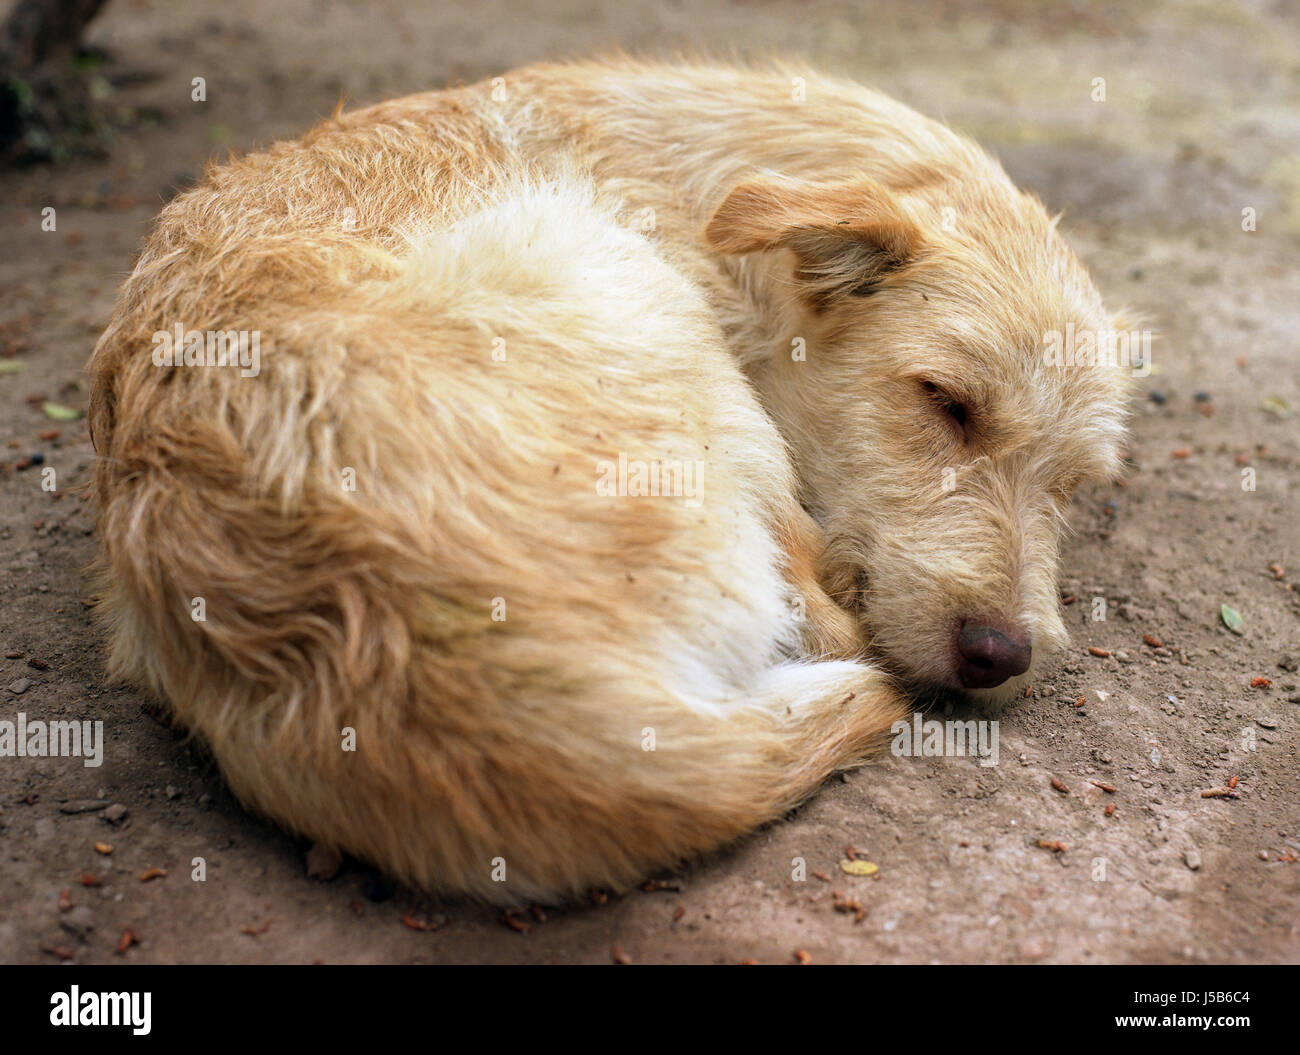 Perro perros durmiendo sueño cómico lindo perro hundeschlaf hundemde ateniense Foto de stock